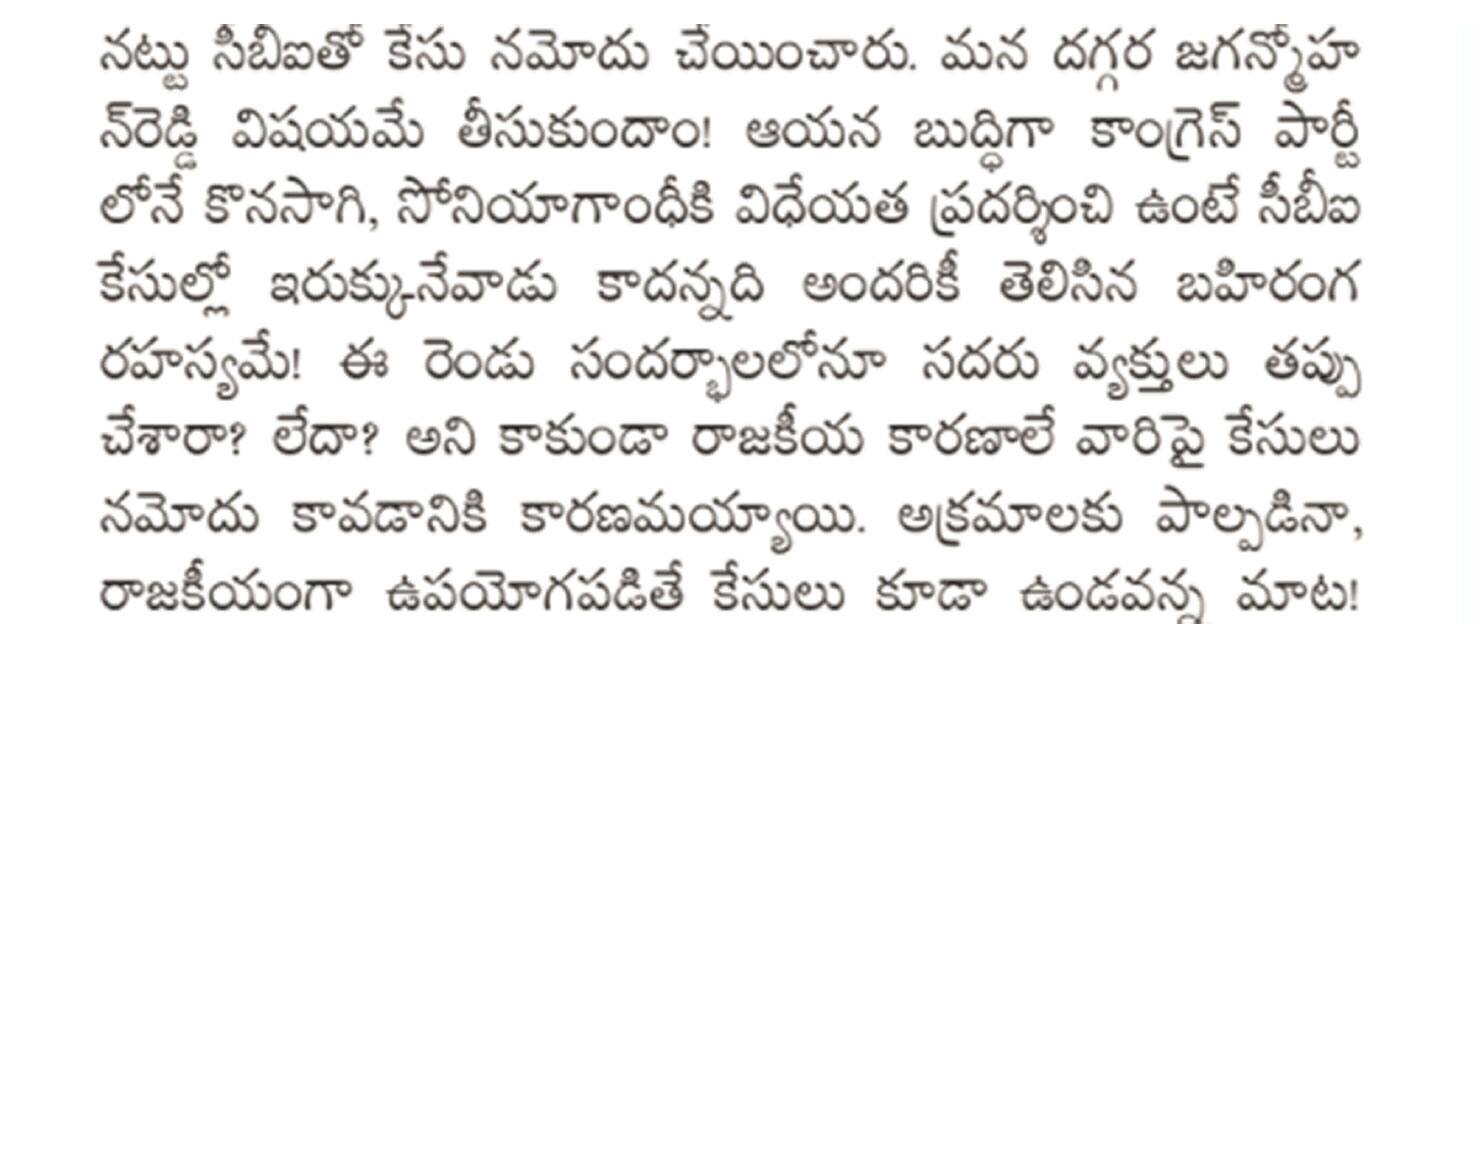 Why Andhra jyothi radhakrishna backing jagan